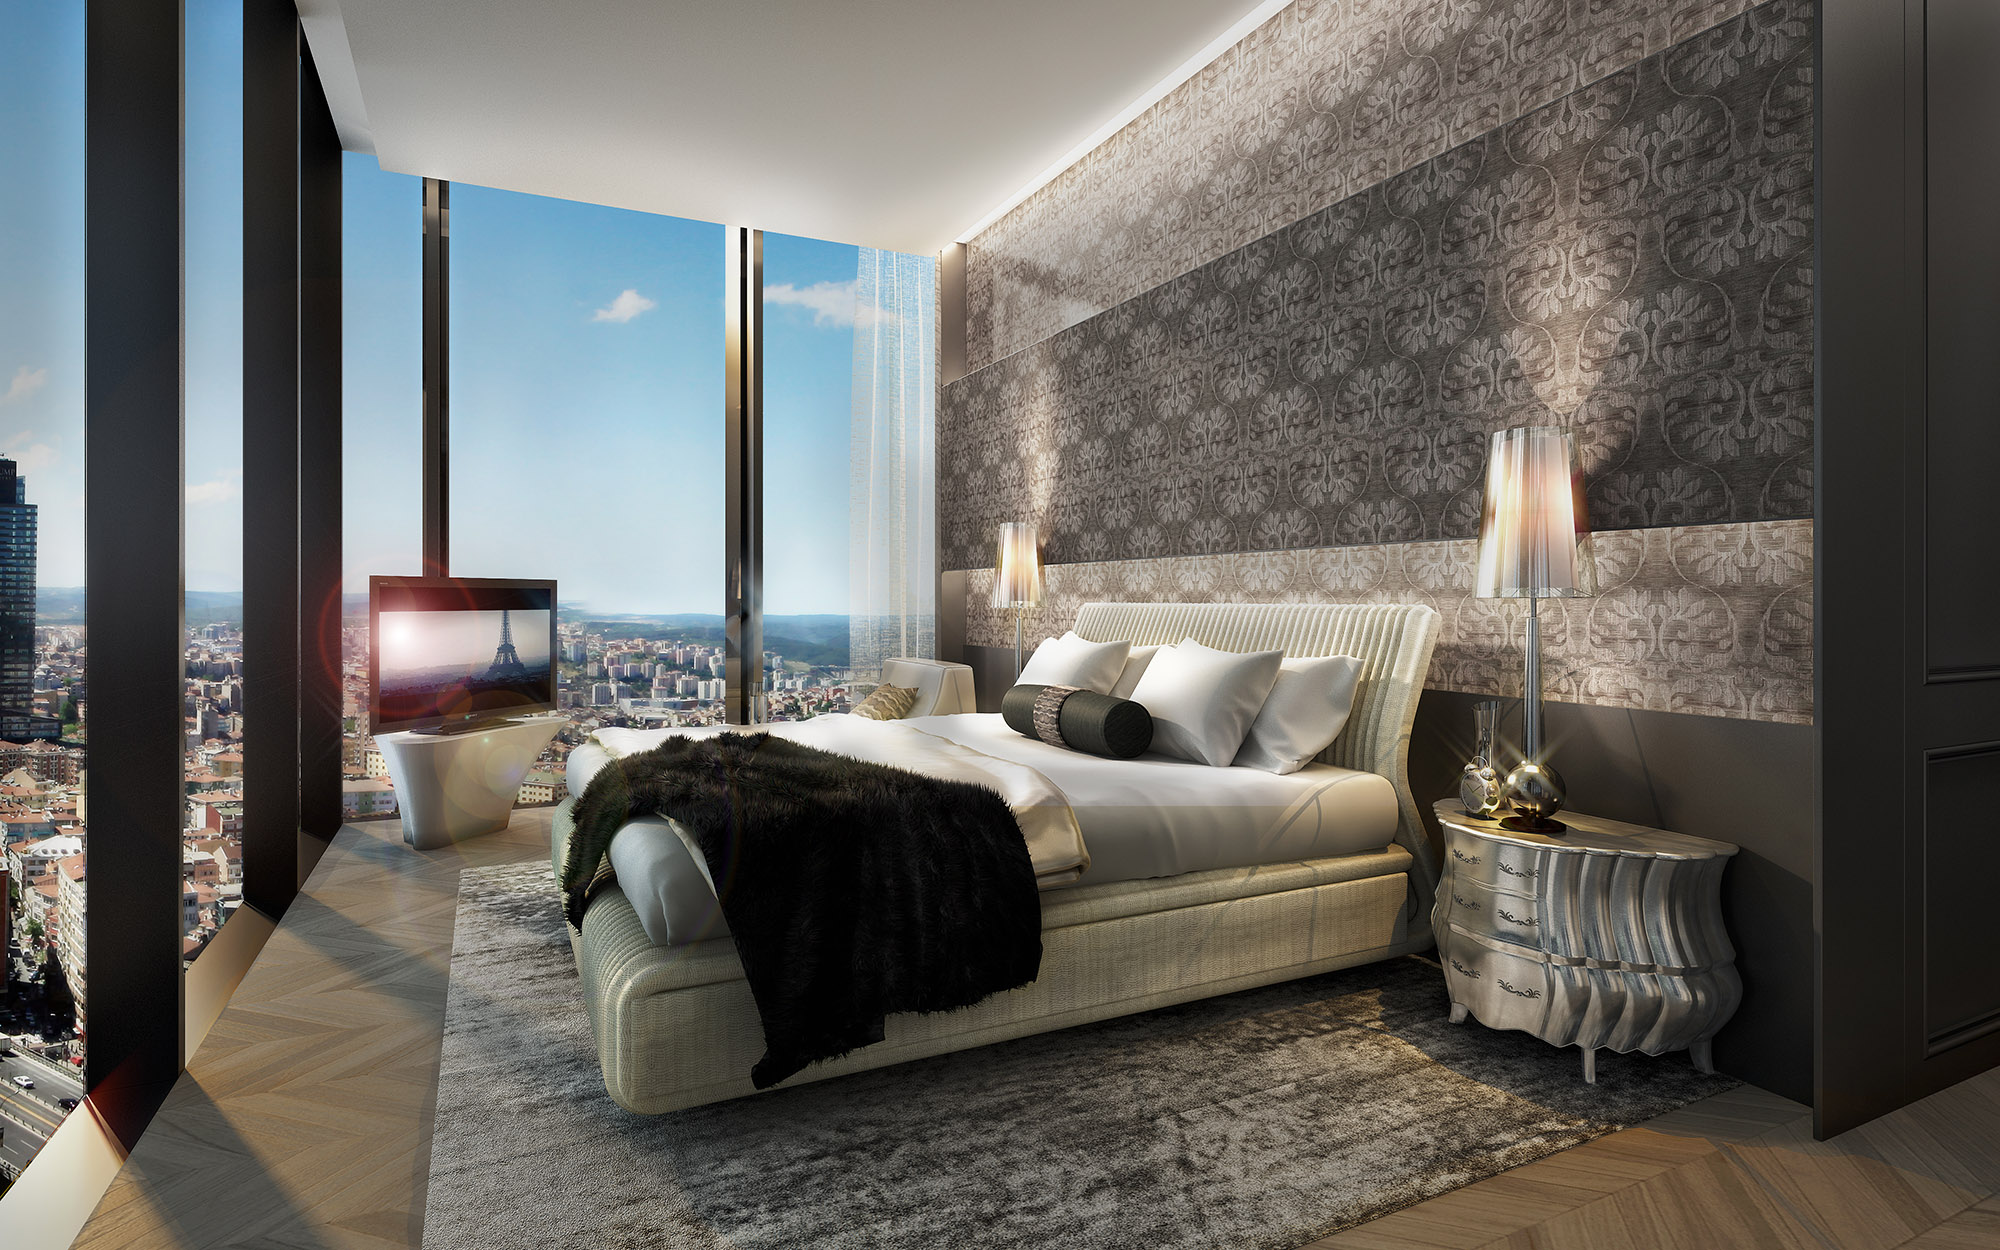 VIP-клиенты МБА смогут приобрести в кредит элитное жилье в Стамбуле - ФОТО